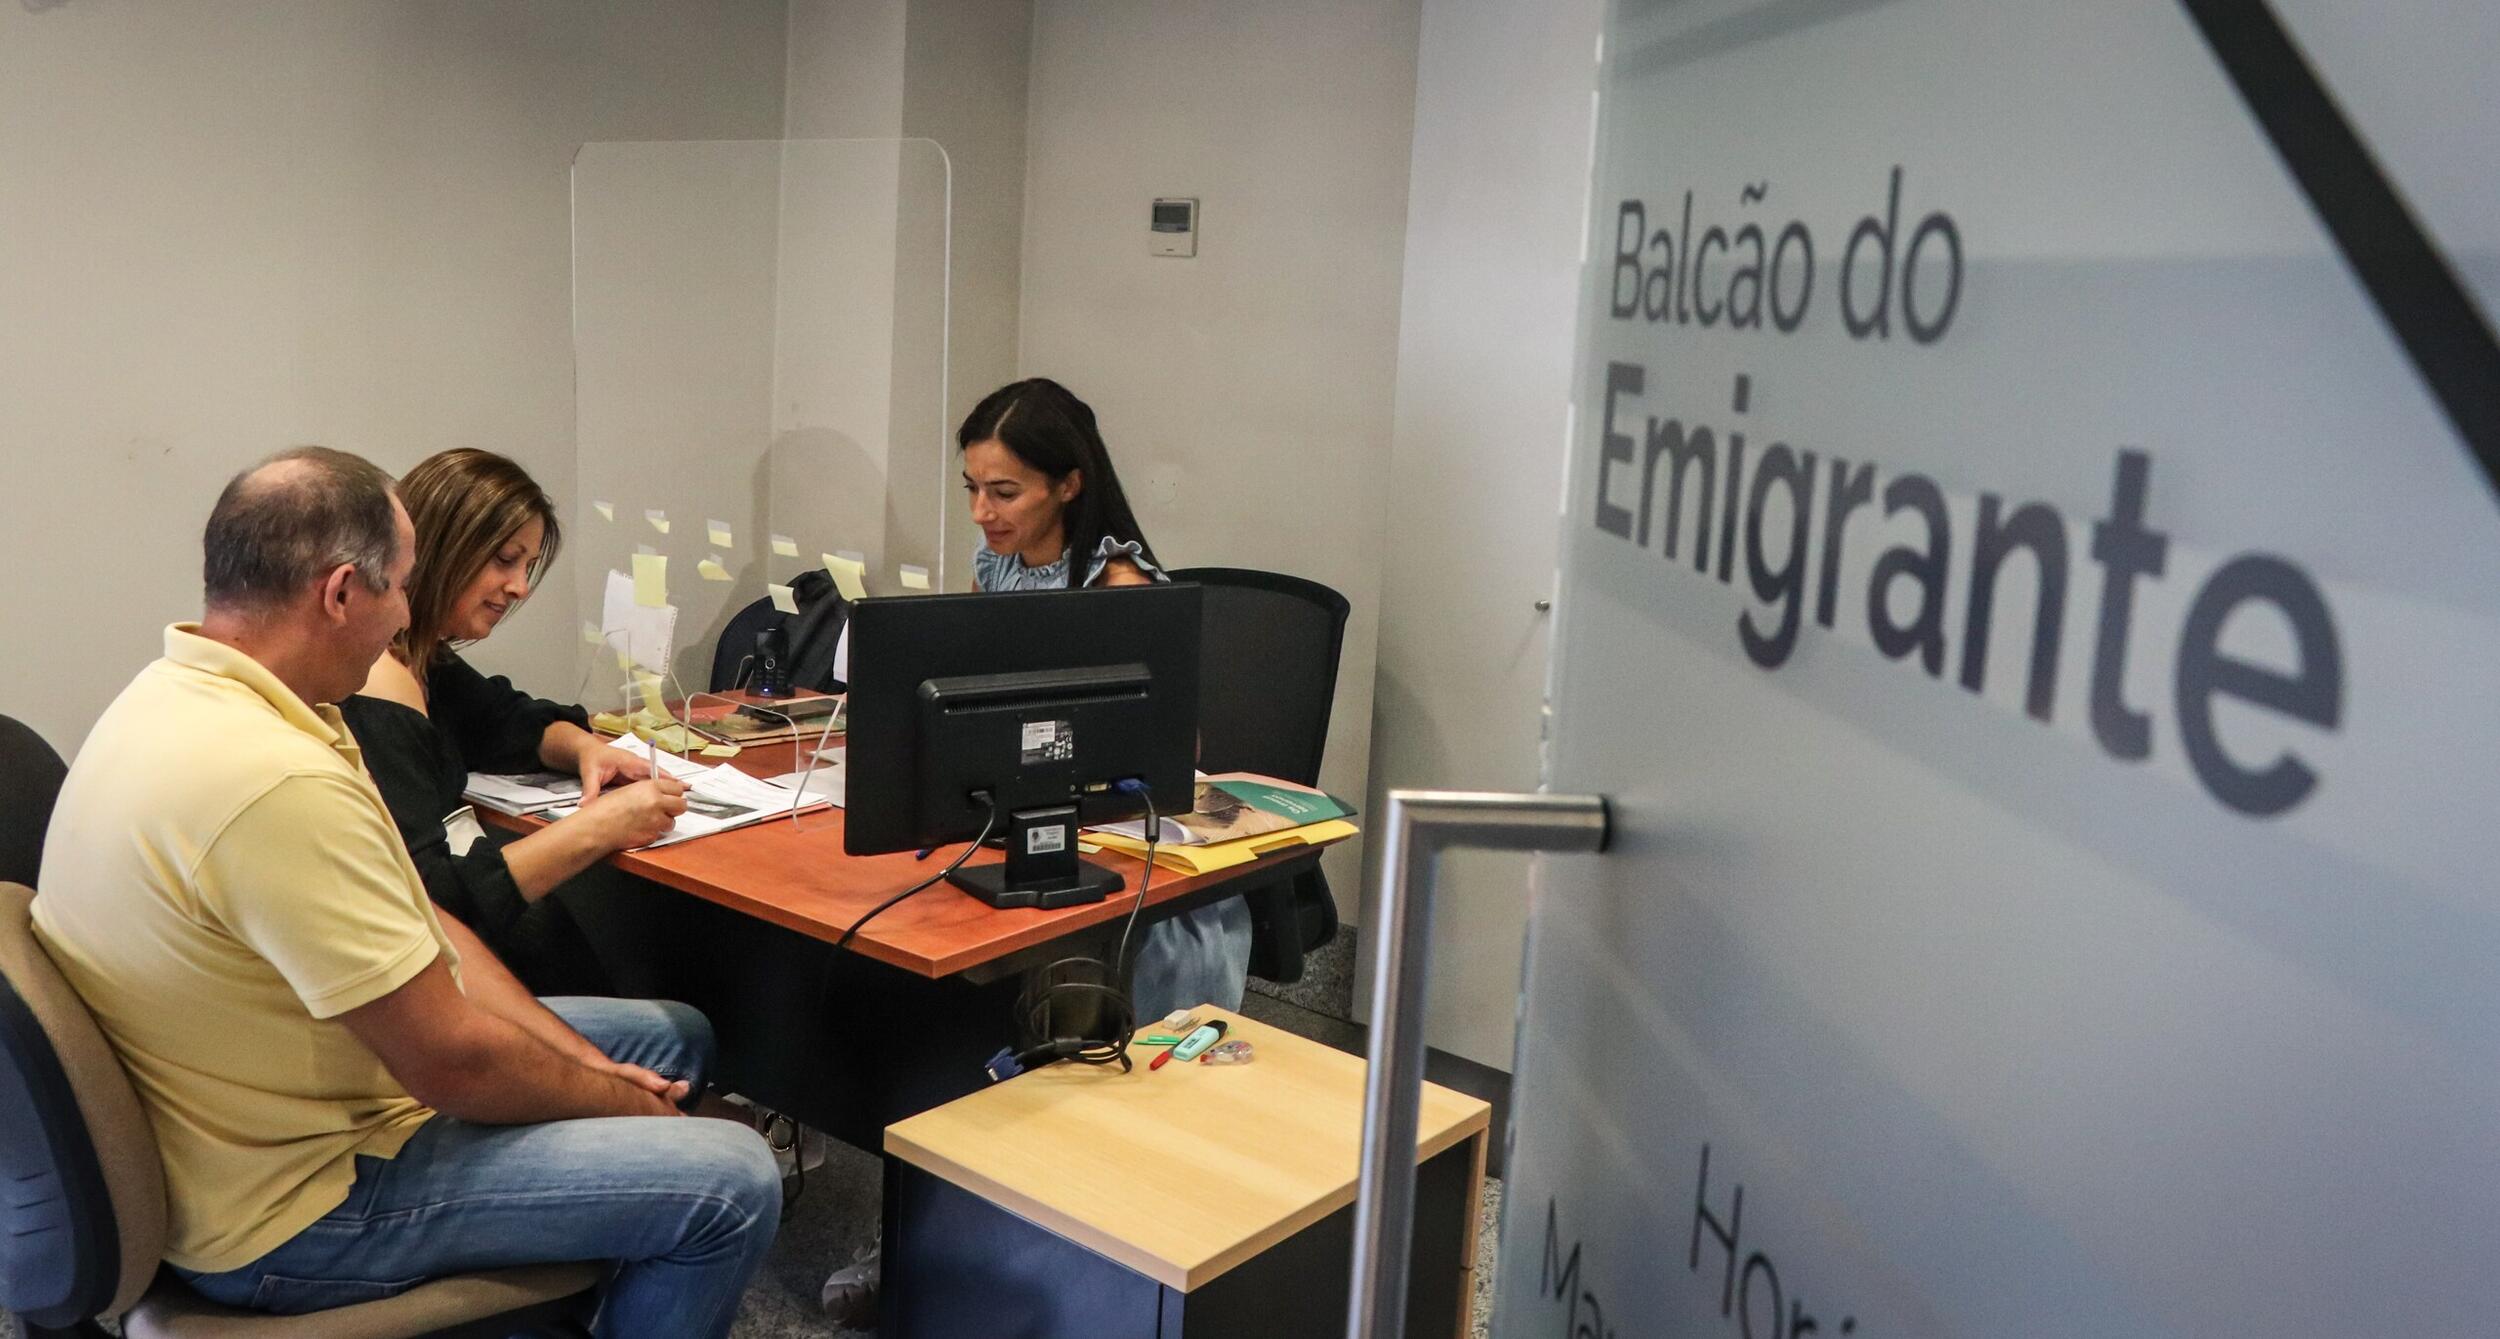 BUPi de Bragança abre um Balcão exclusivo para Emigrantes